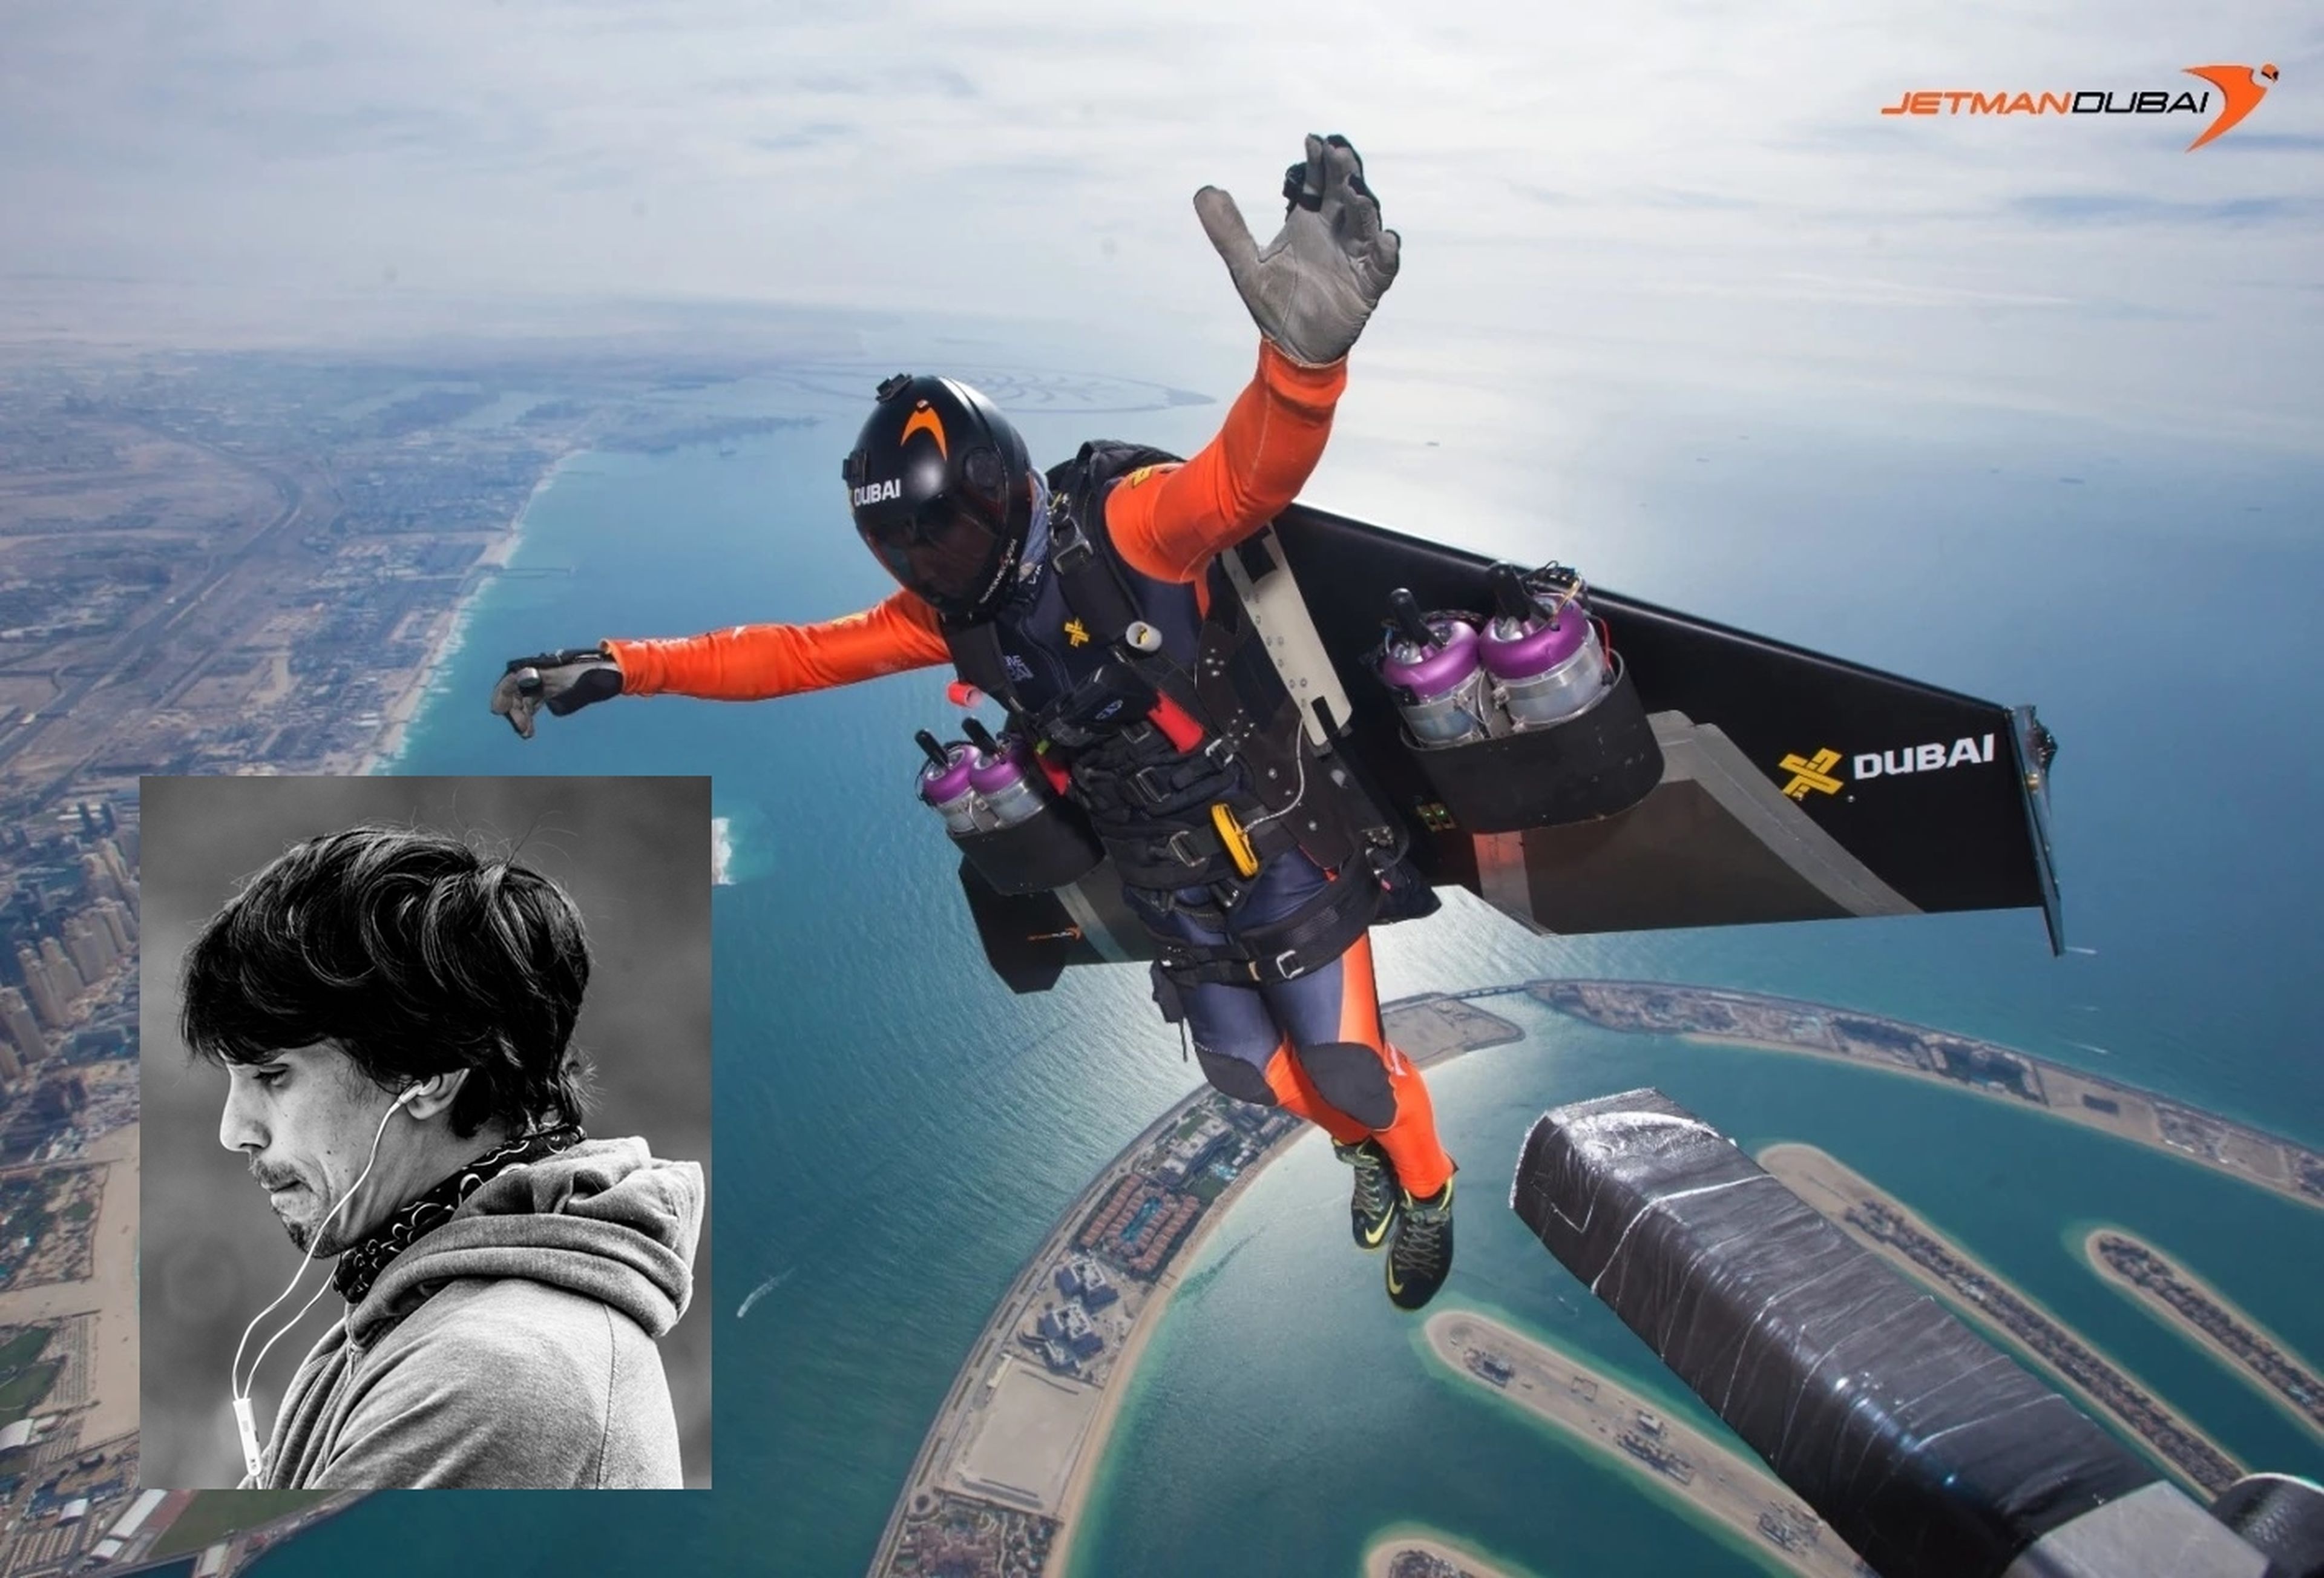 Fallece el piloto de traje volador Vince Reffet, a los 36 años, en un accidente en Dubái